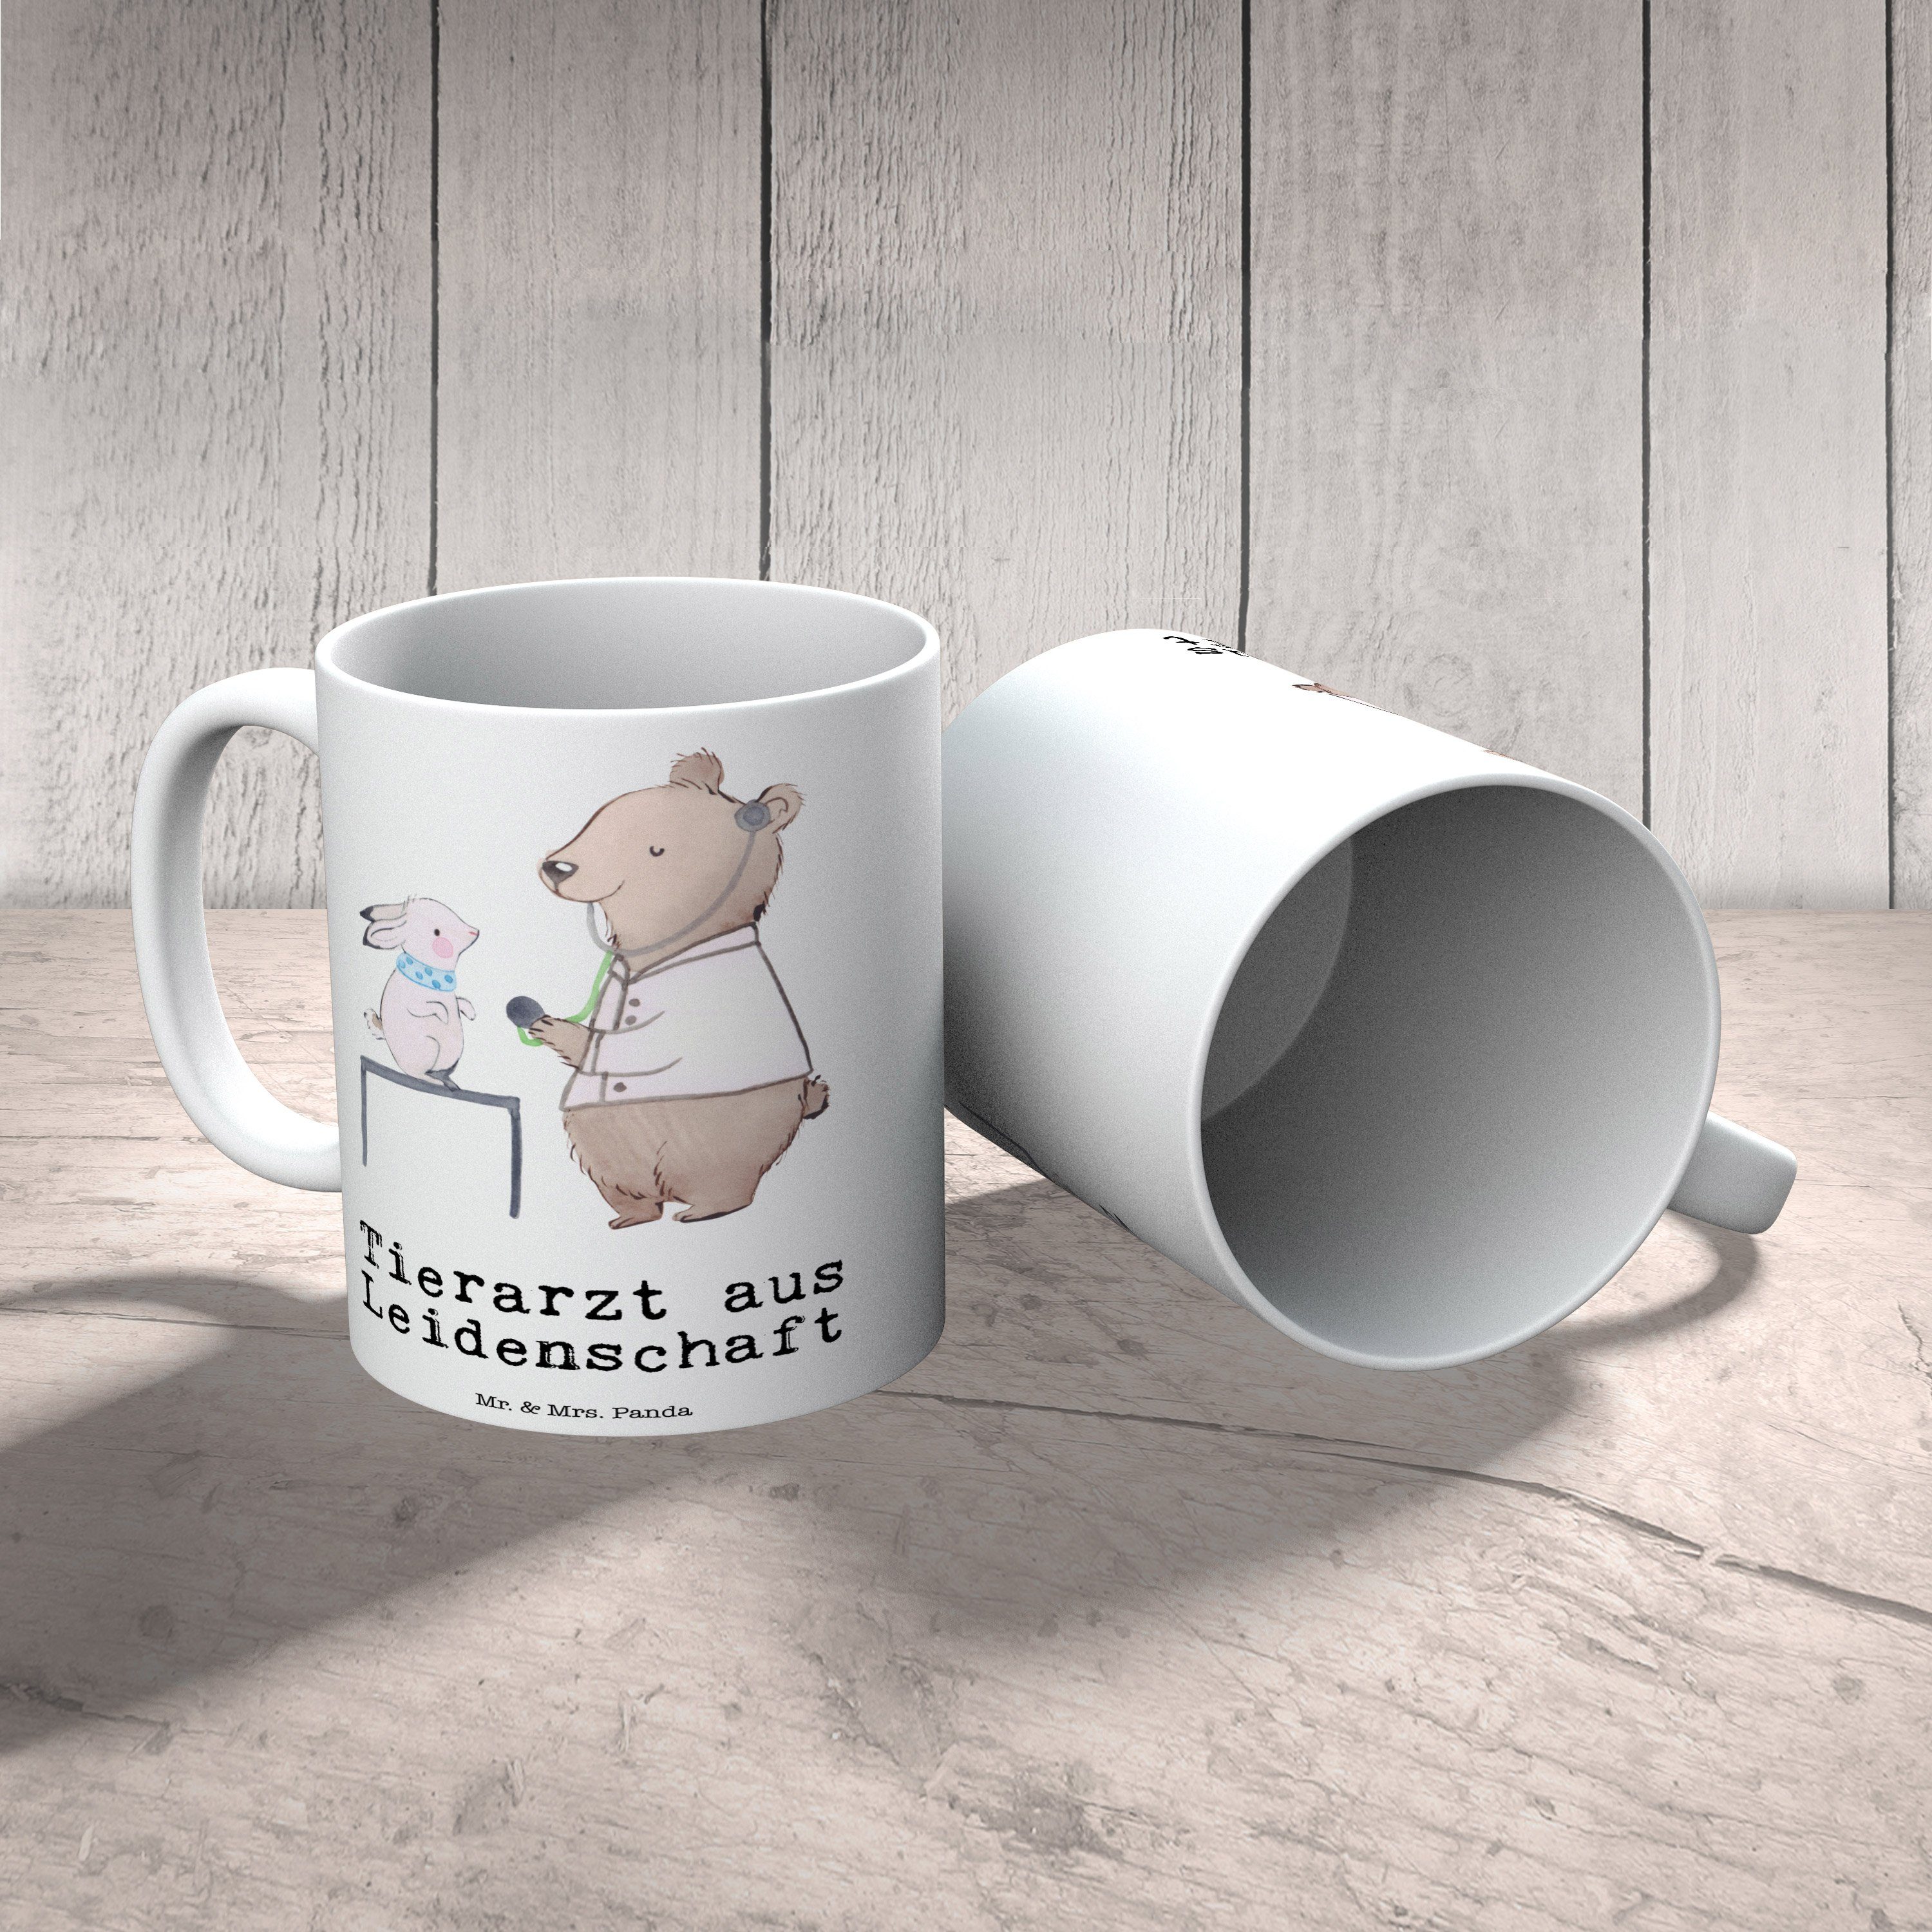 Mr. Keramik & Panda Mrs. - Tierarzt Teetasse, Leidenschaft Tasse - Geschenk, Tasse Weiß aus Motive,